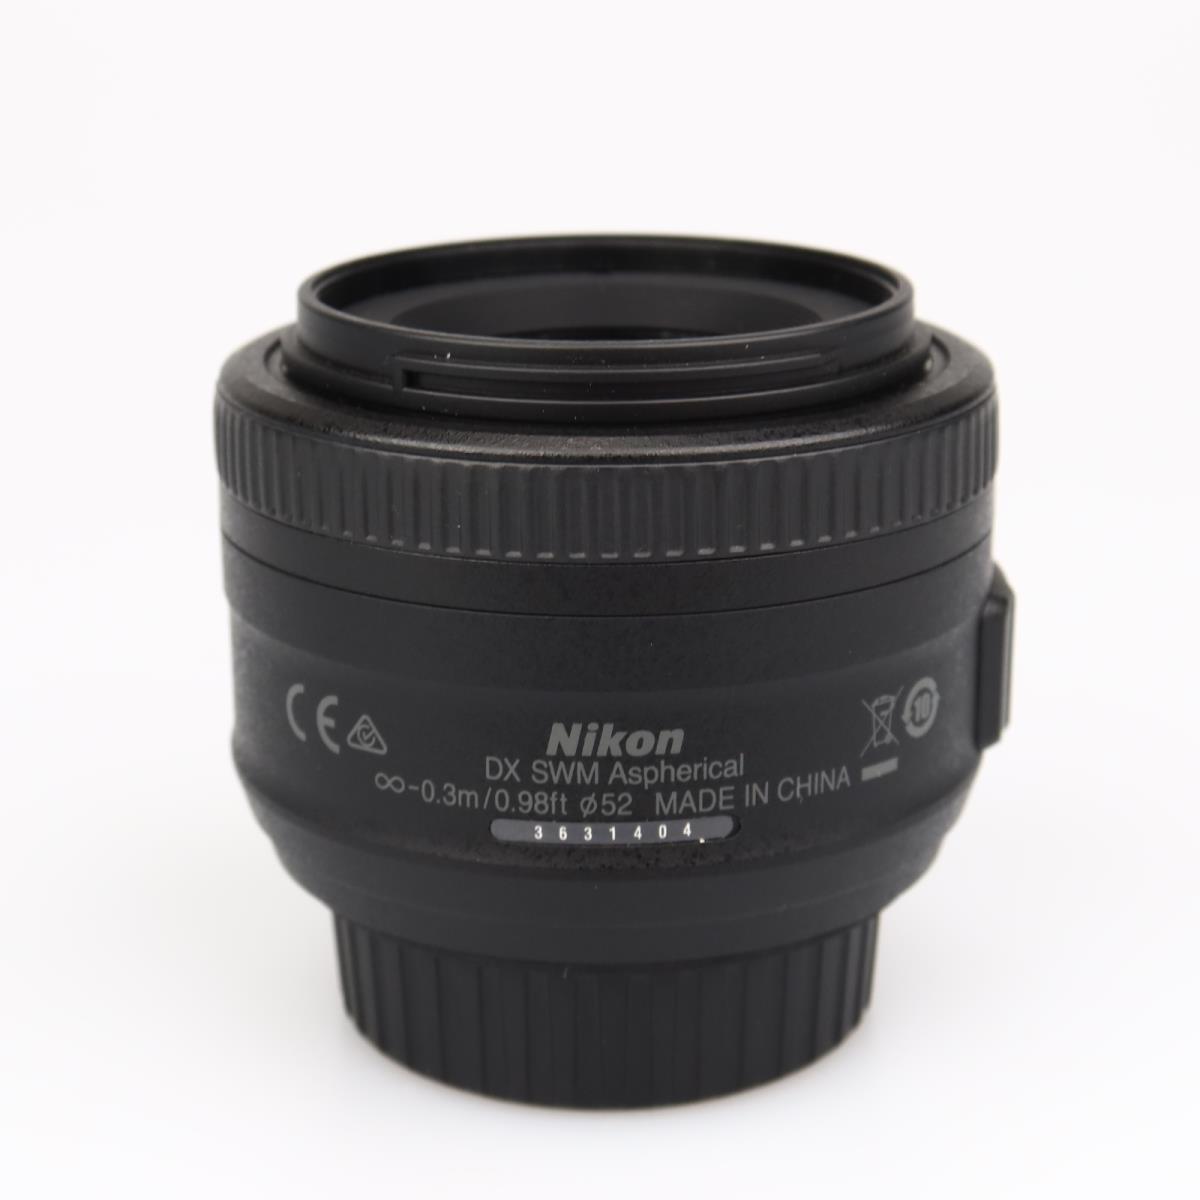 Nikon AF-S Nikkor 35mm f/1.8 G DX (käytetty)